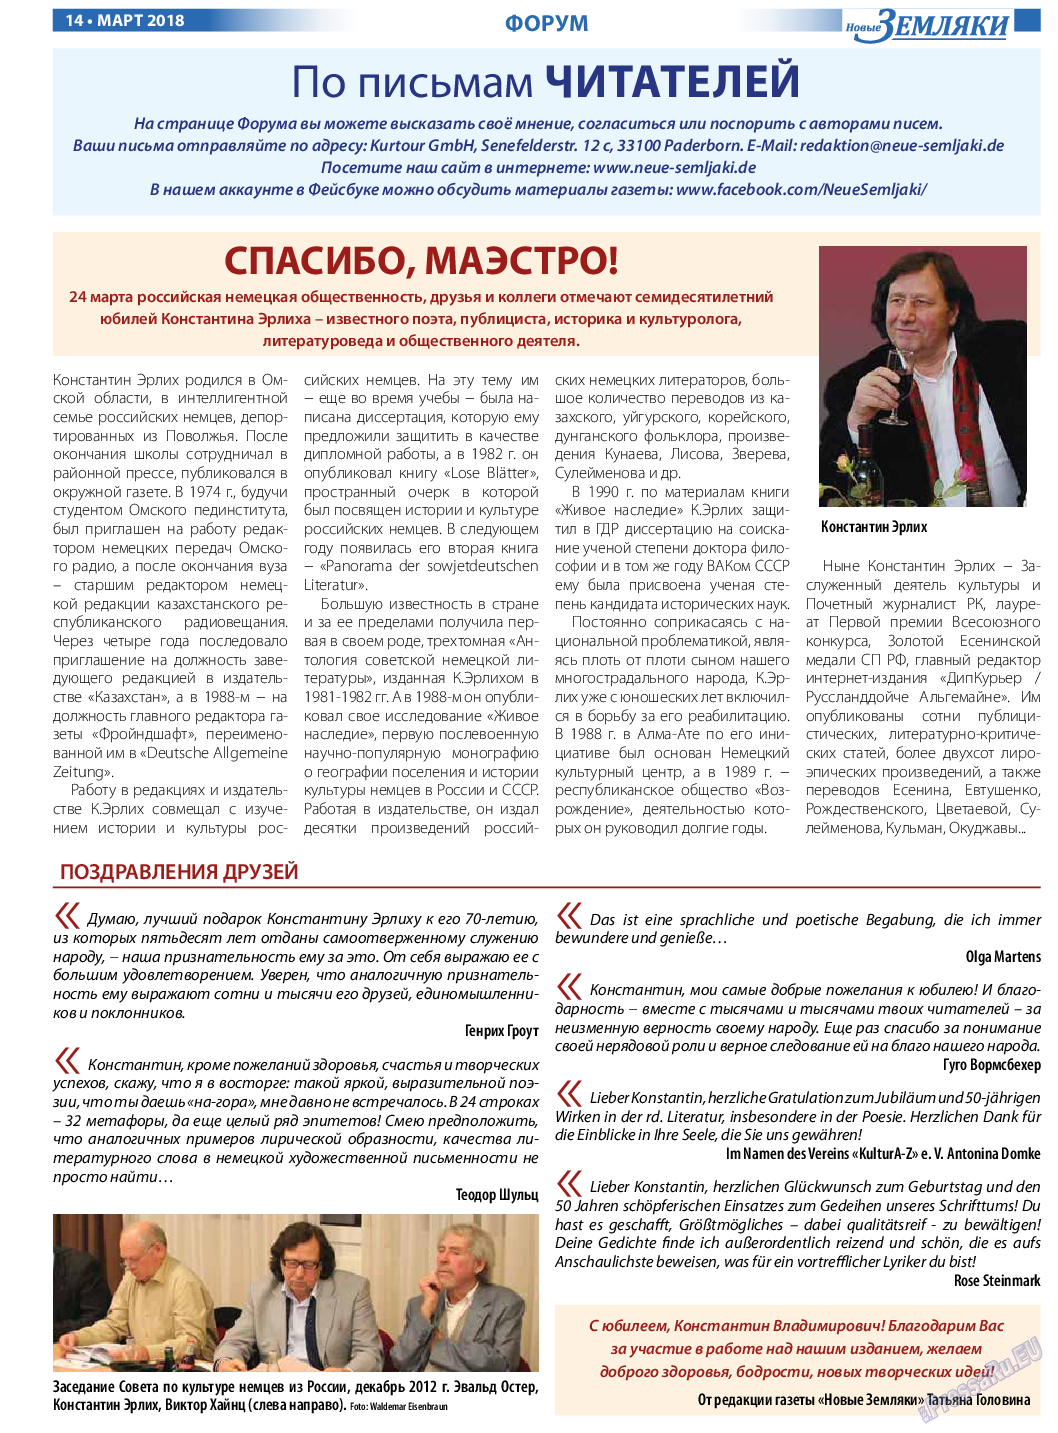 Новые Земляки (газета). 2018 год, номер 3, стр. 14